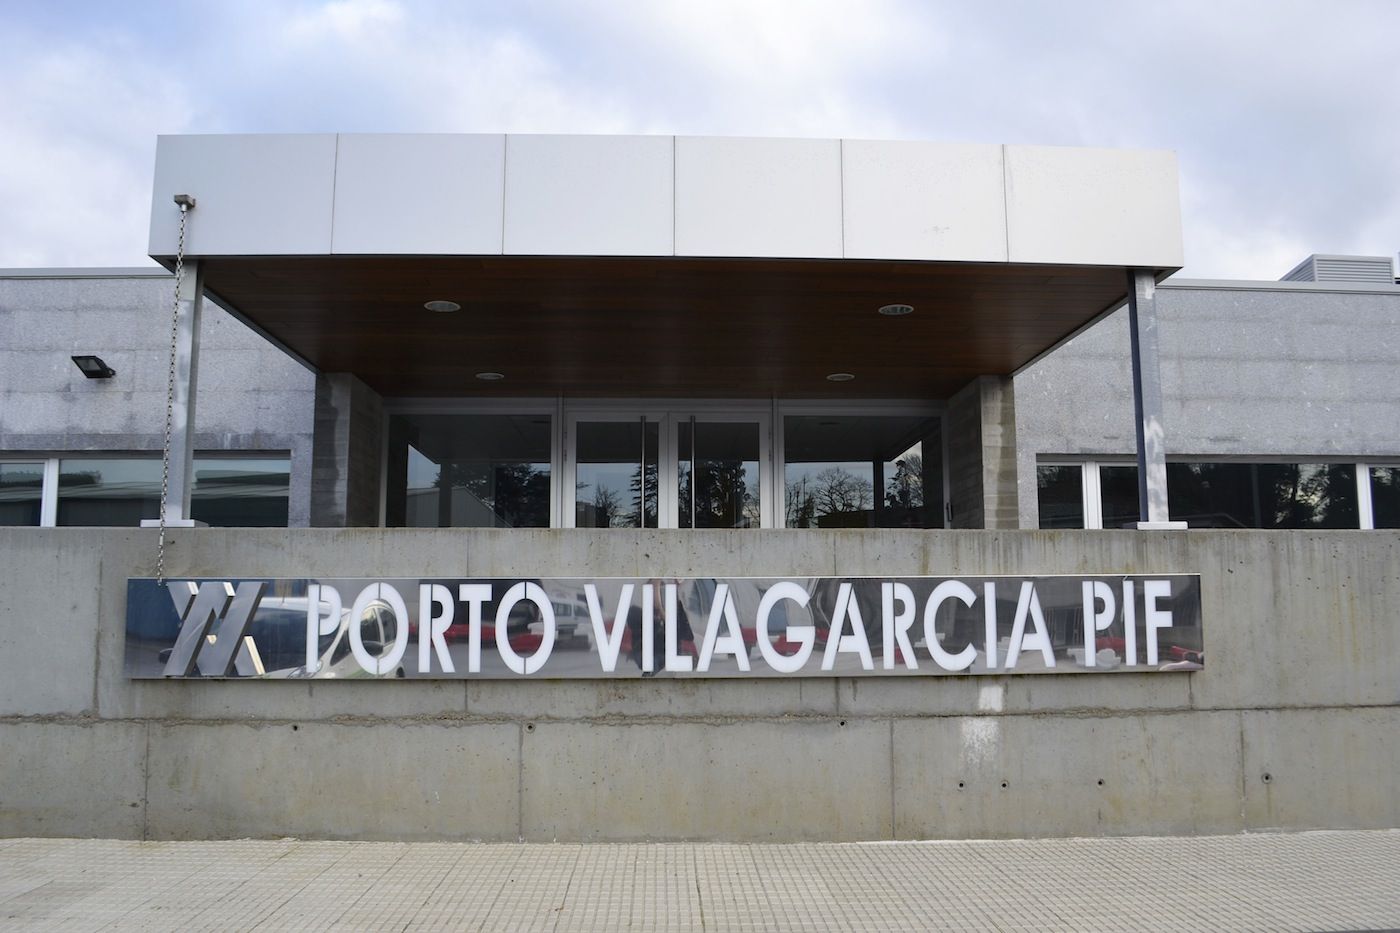 Puerto de Vilagarcía PIF exterior